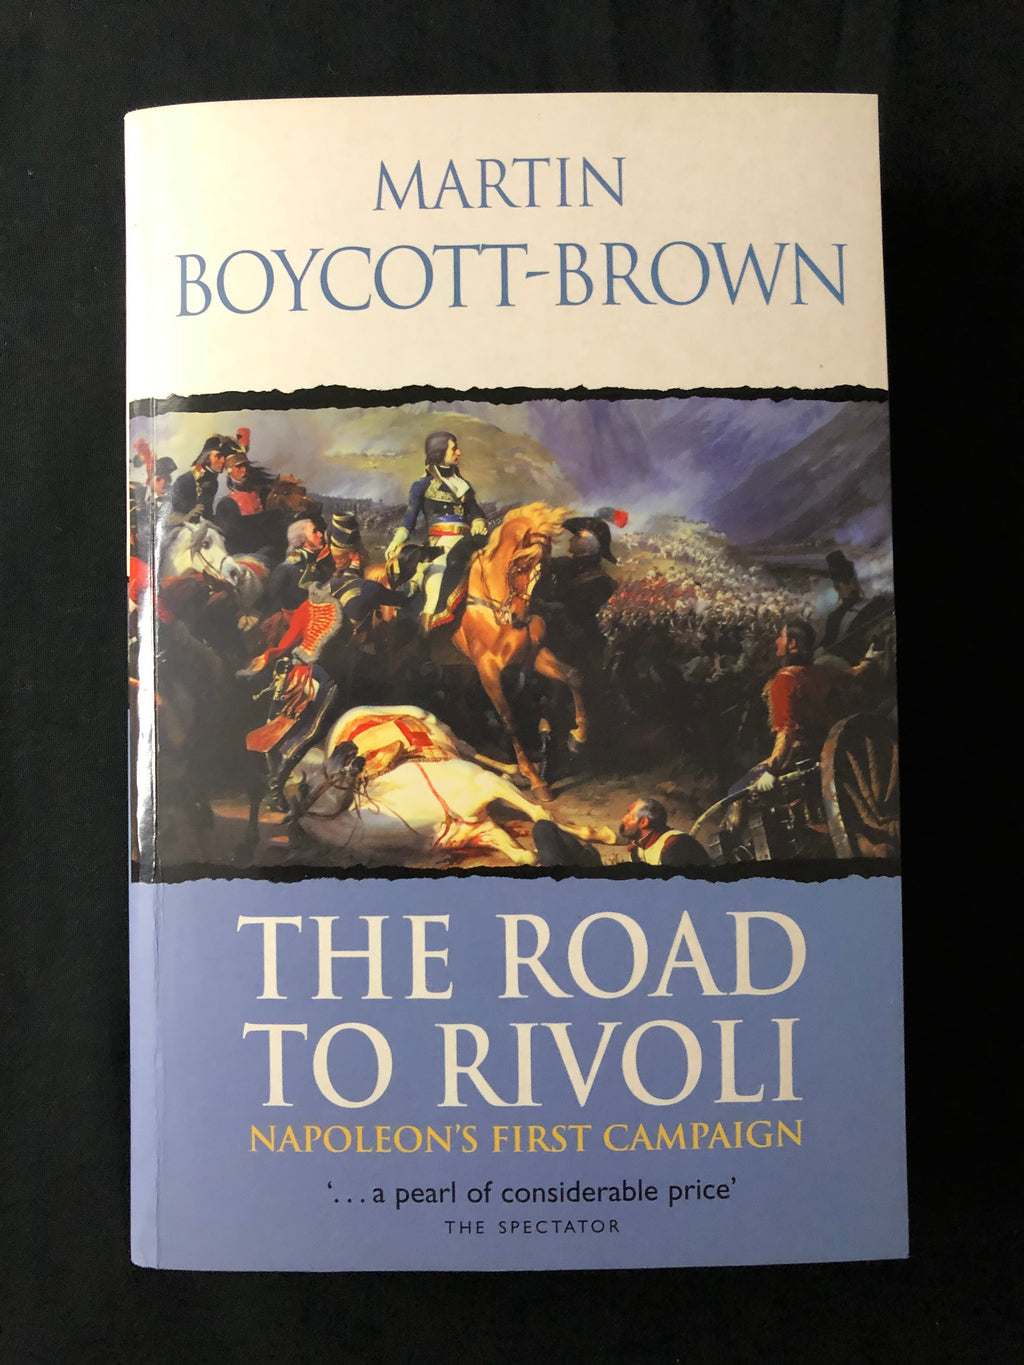 あすつく】 Road The to Boycott-Brown Rivoli Martin 洋書 - www ...